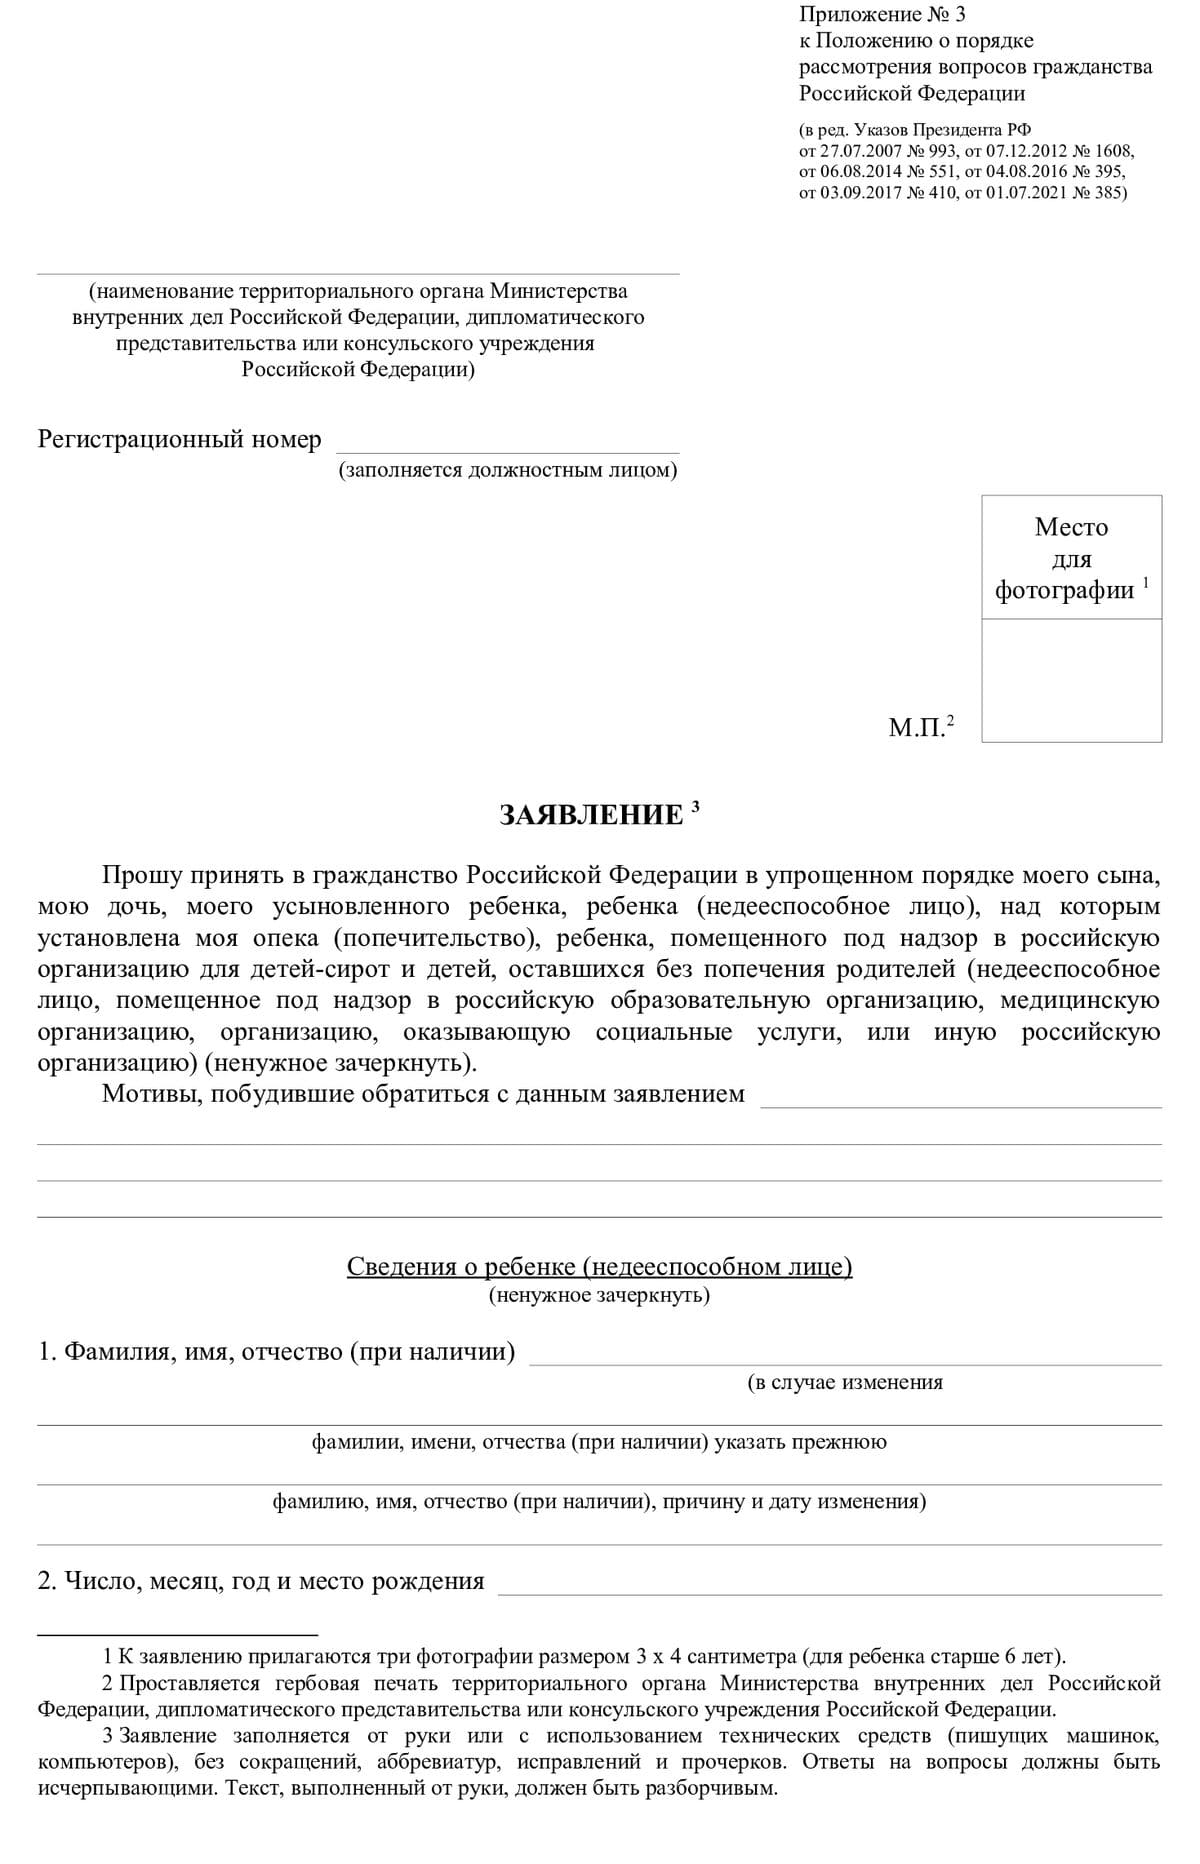 Образцы заполнения заявления на гражданство РФ на все случаи жизни